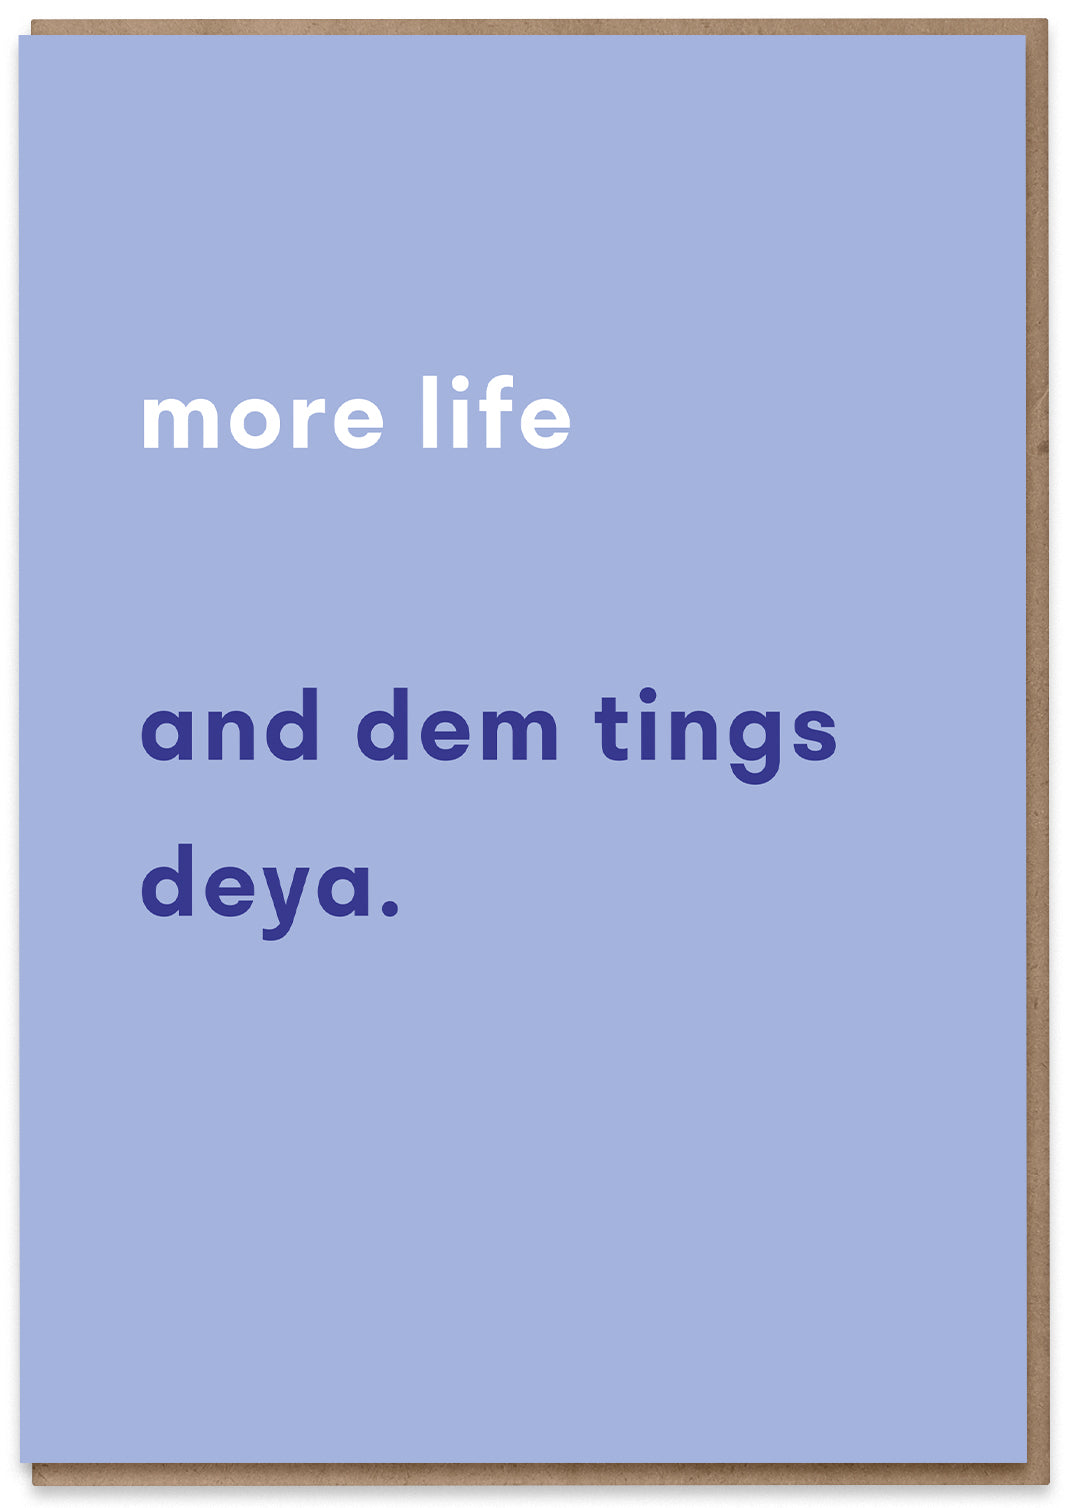 More Life (and dem tings deya)